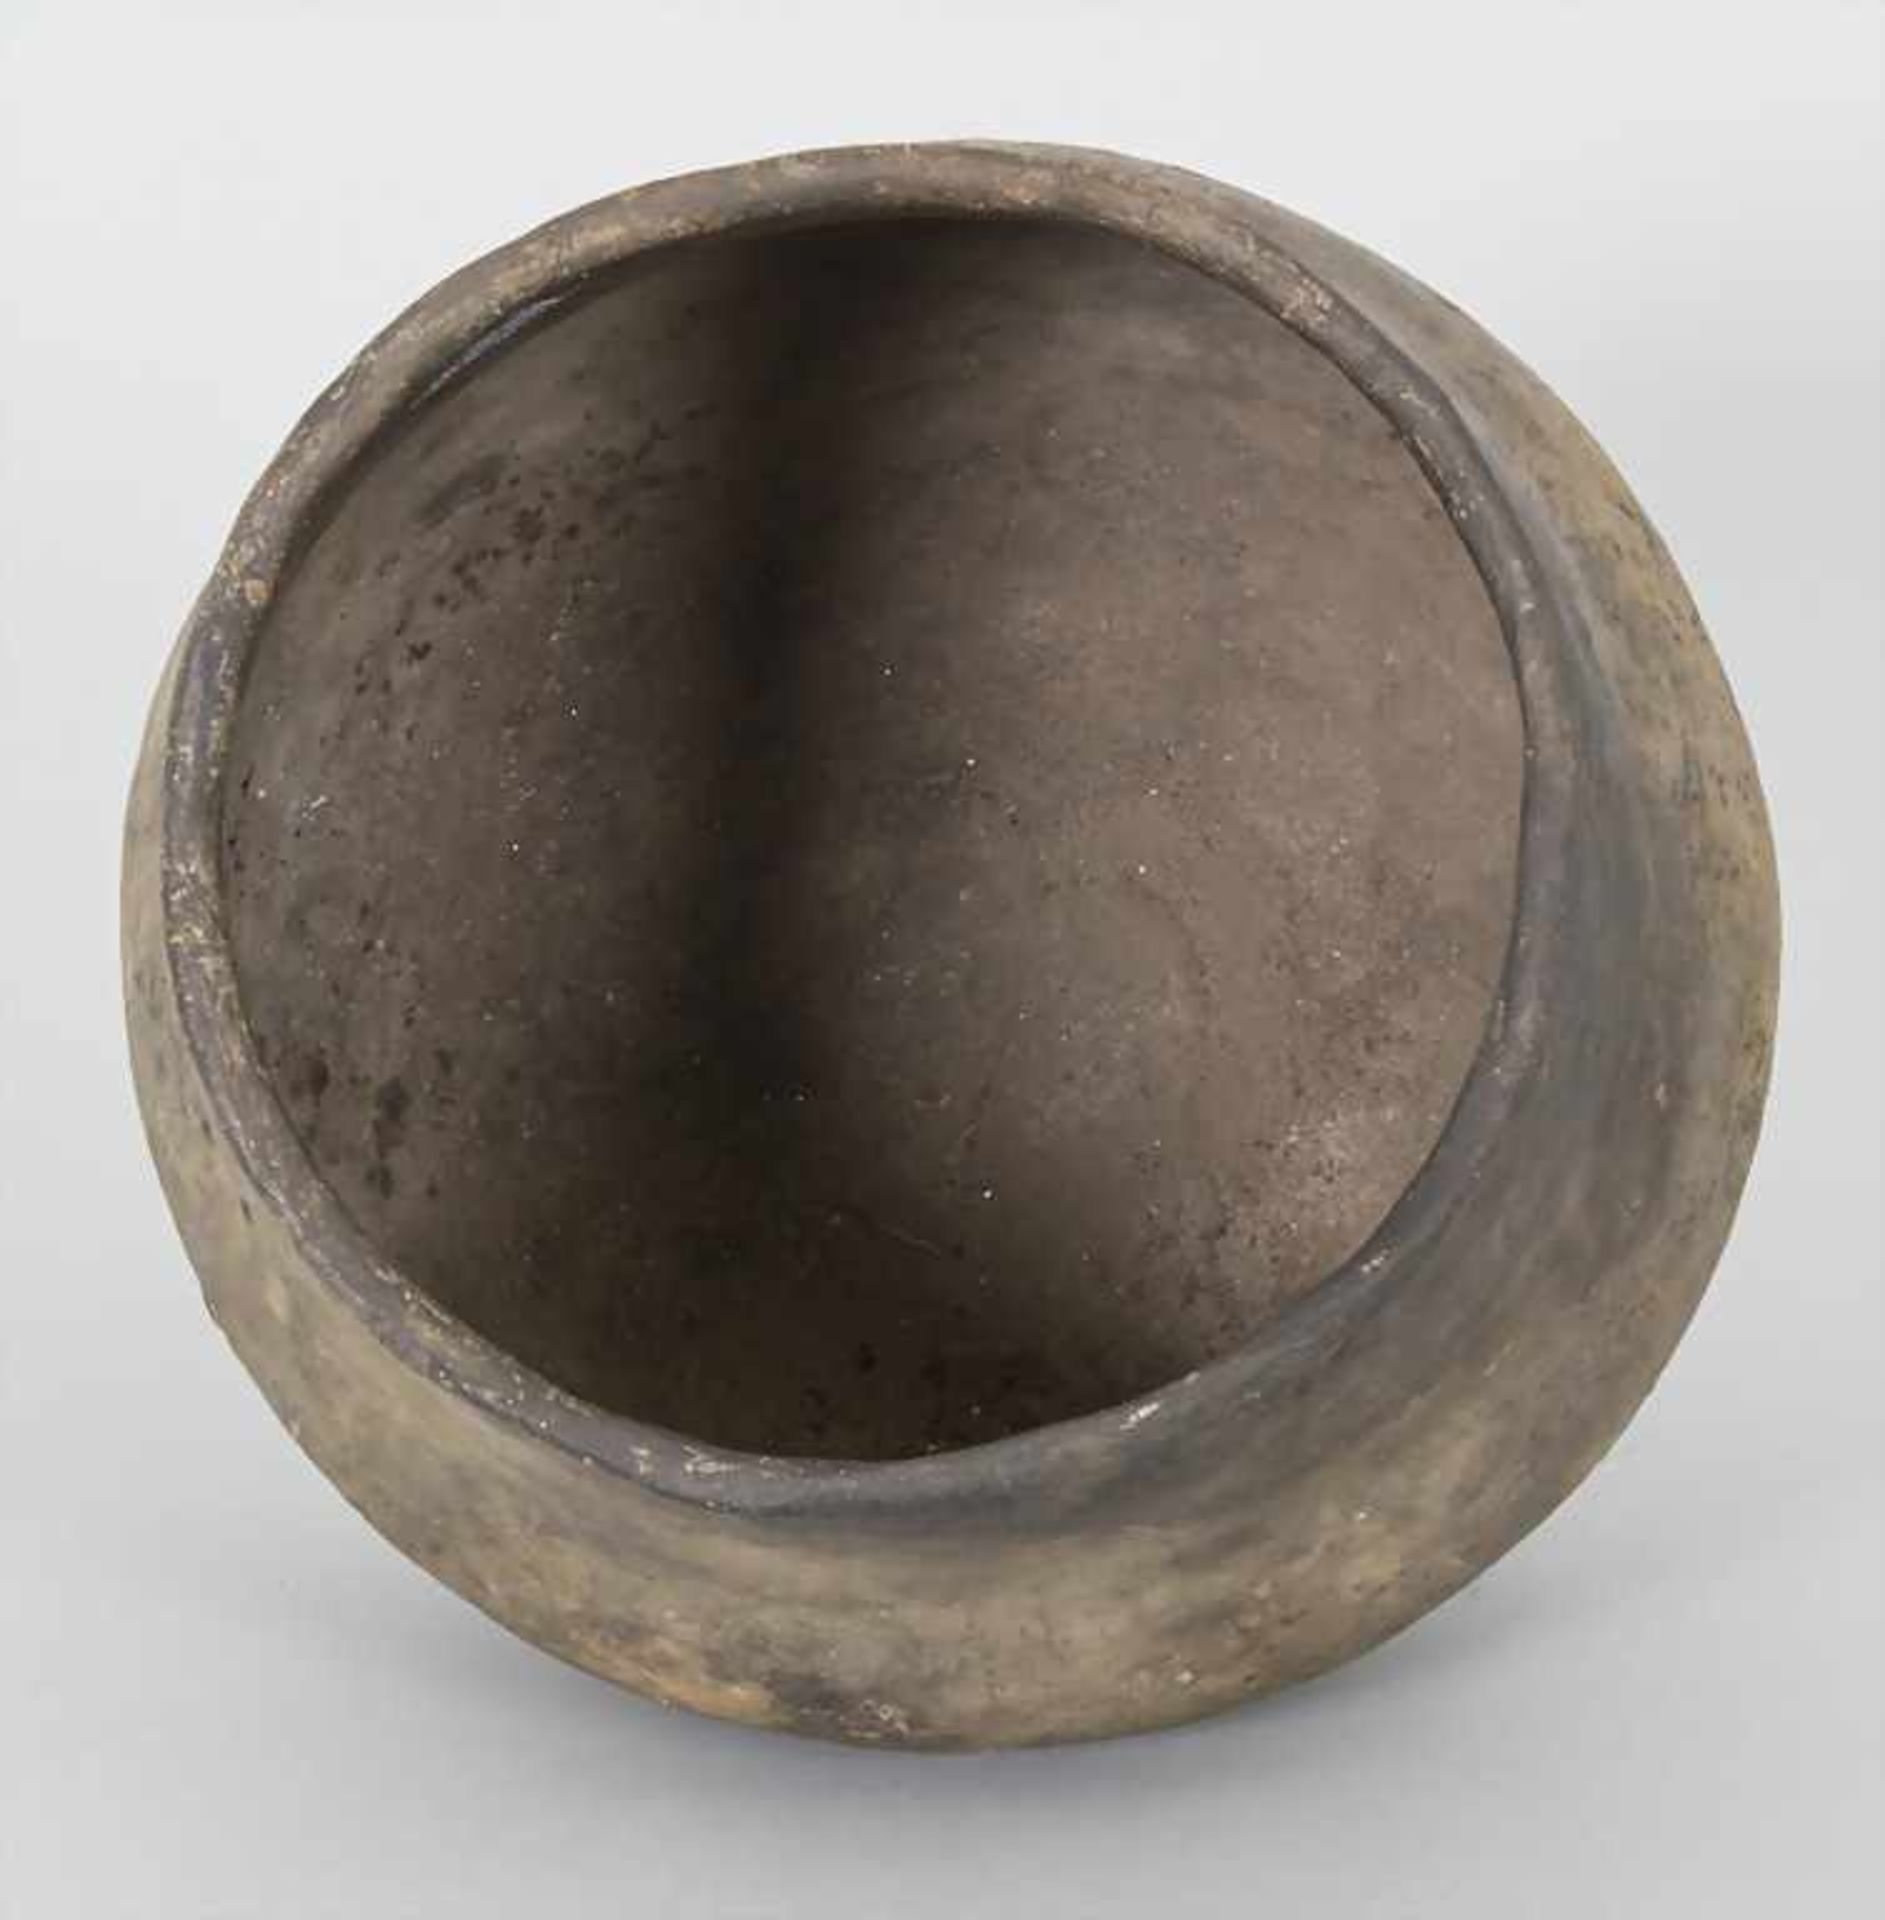 Bronzezeitliches Keramik-Gefäß / A Bronze Age ceramic vessel, Lausitzer Kultur, 9. - 6. Jh. v. Chr. - Image 4 of 5